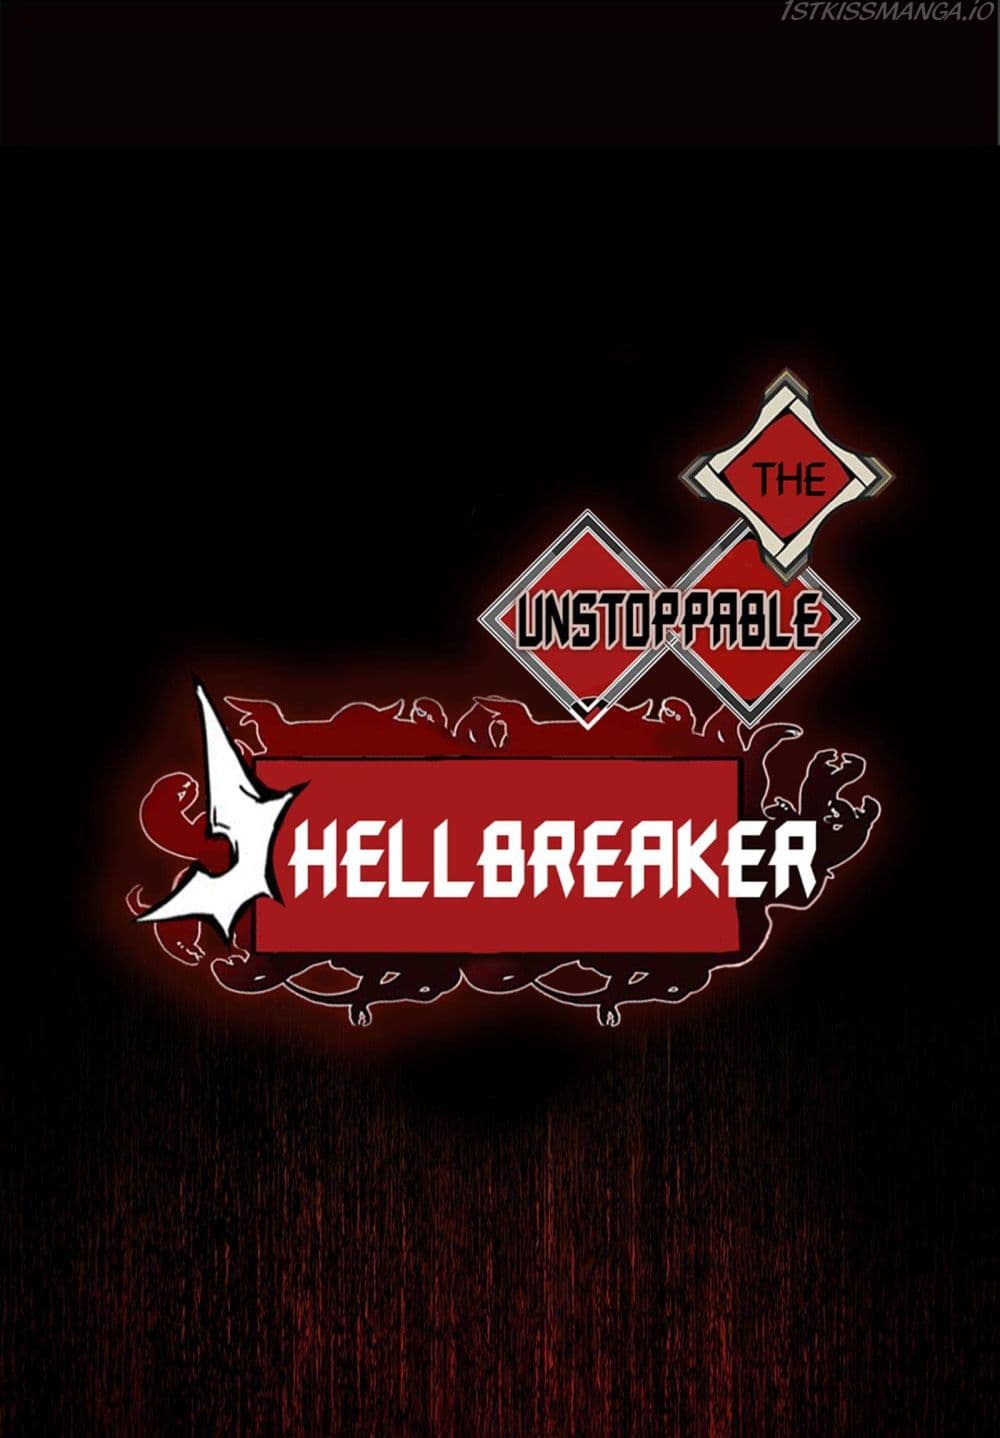 The Unstoppable Hellbreaker 28-28